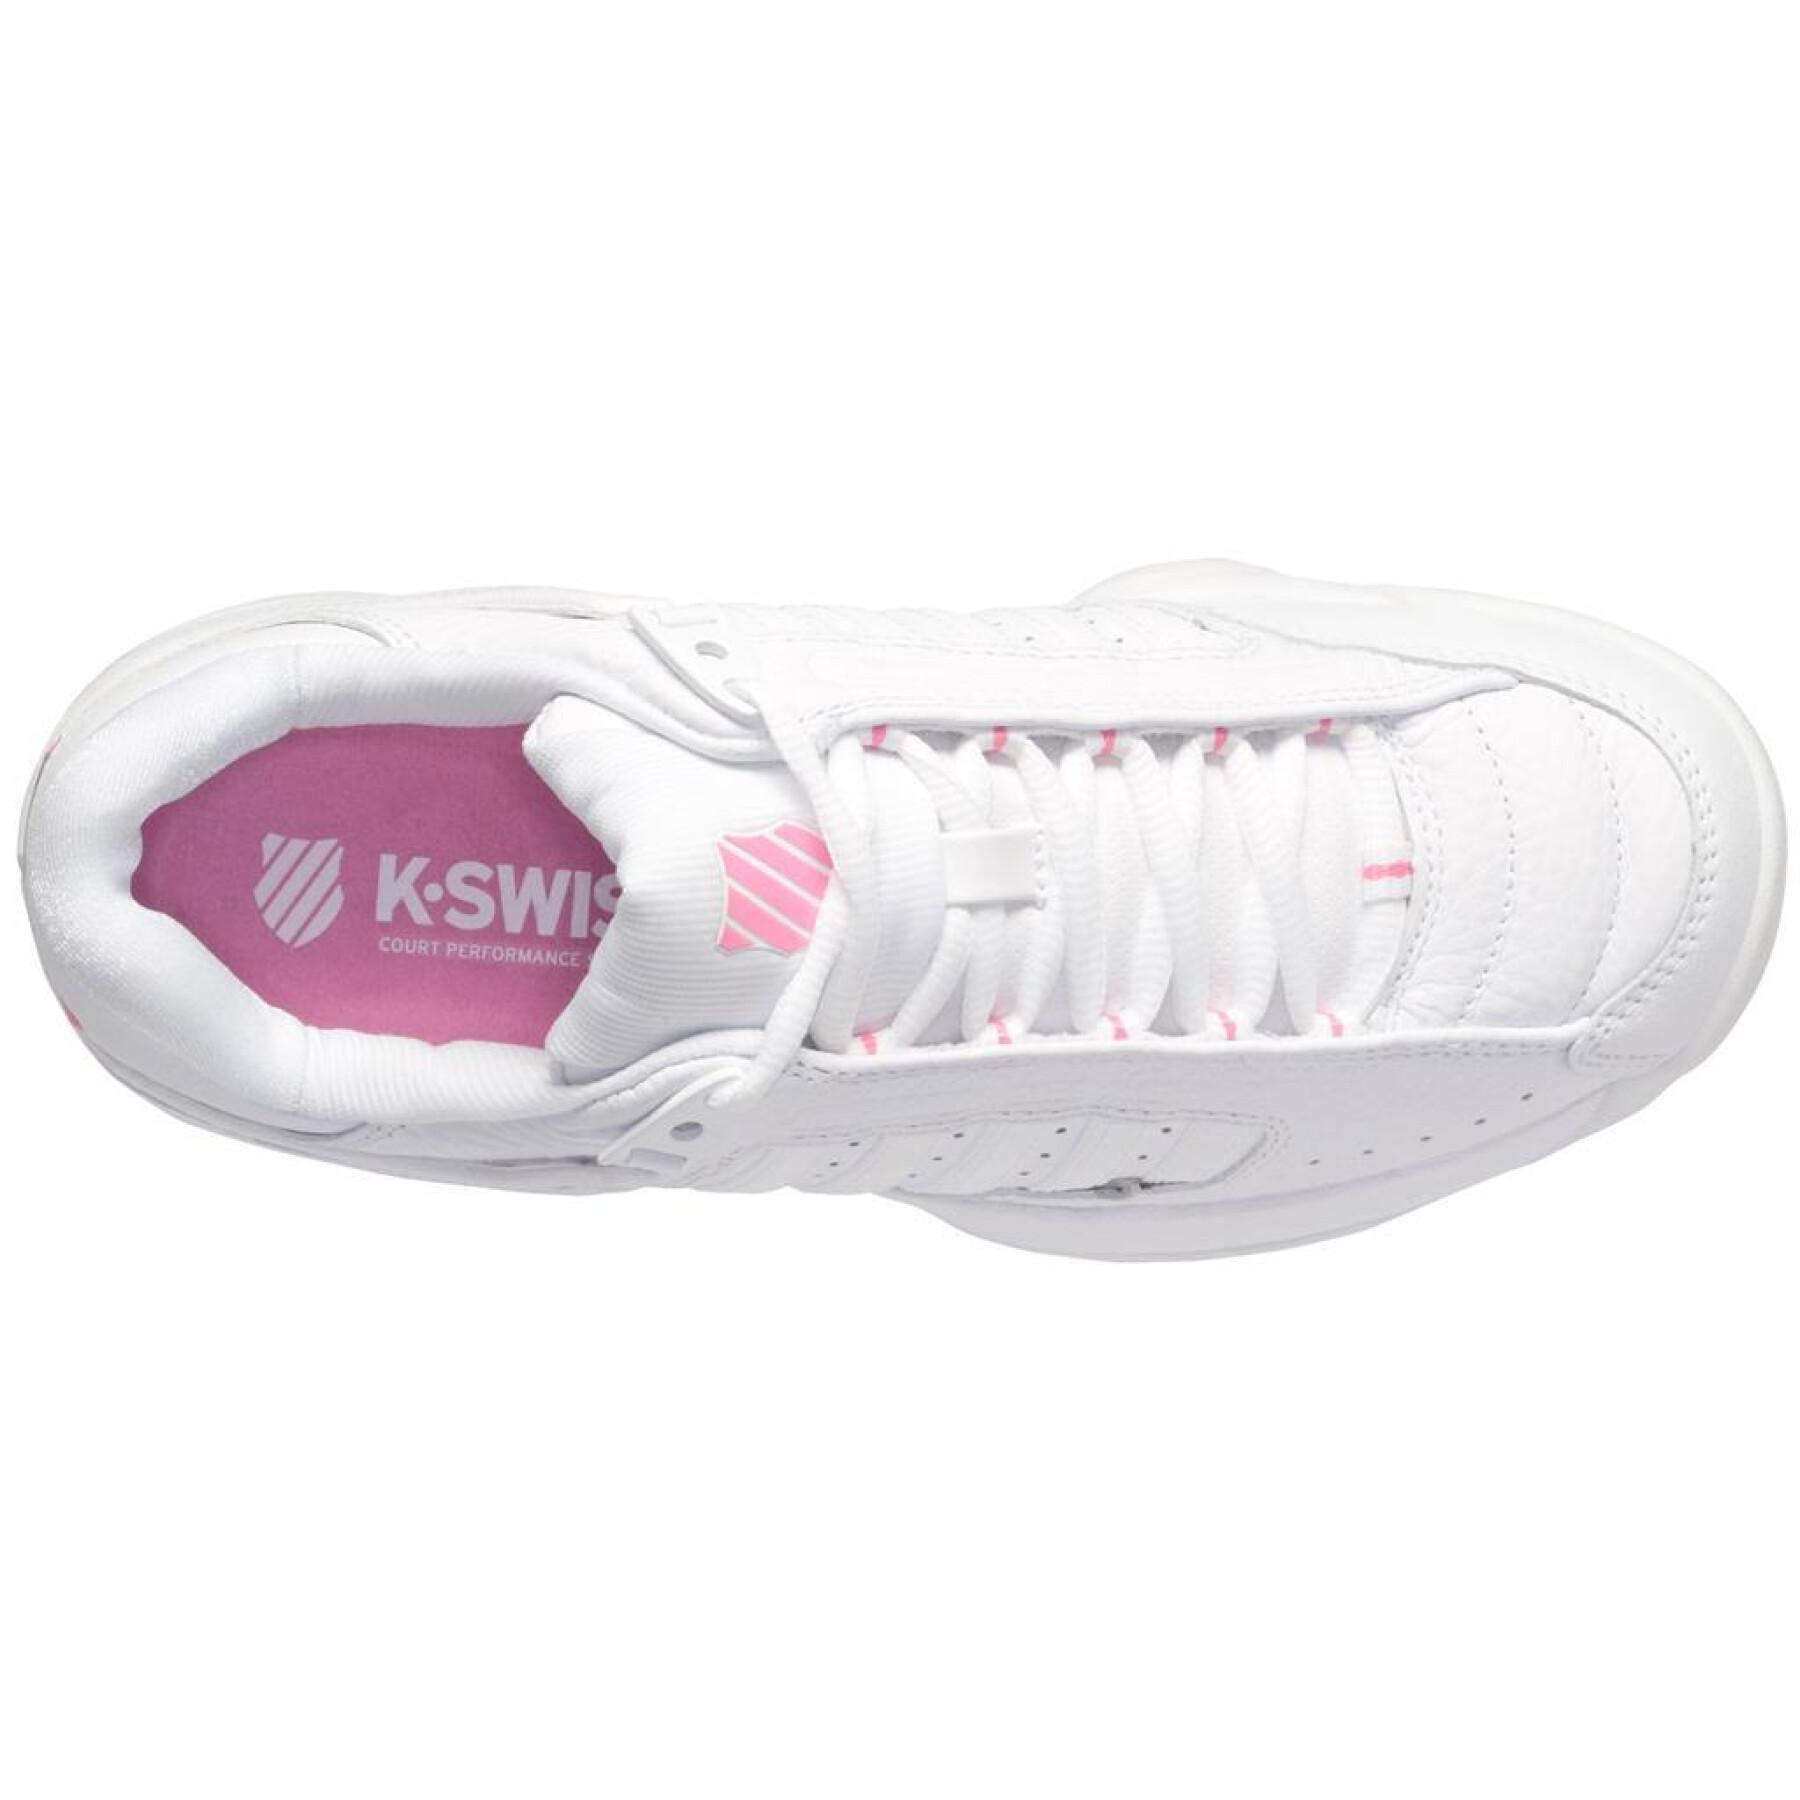 Women's tennis shoes K-Swiss Defier Rs